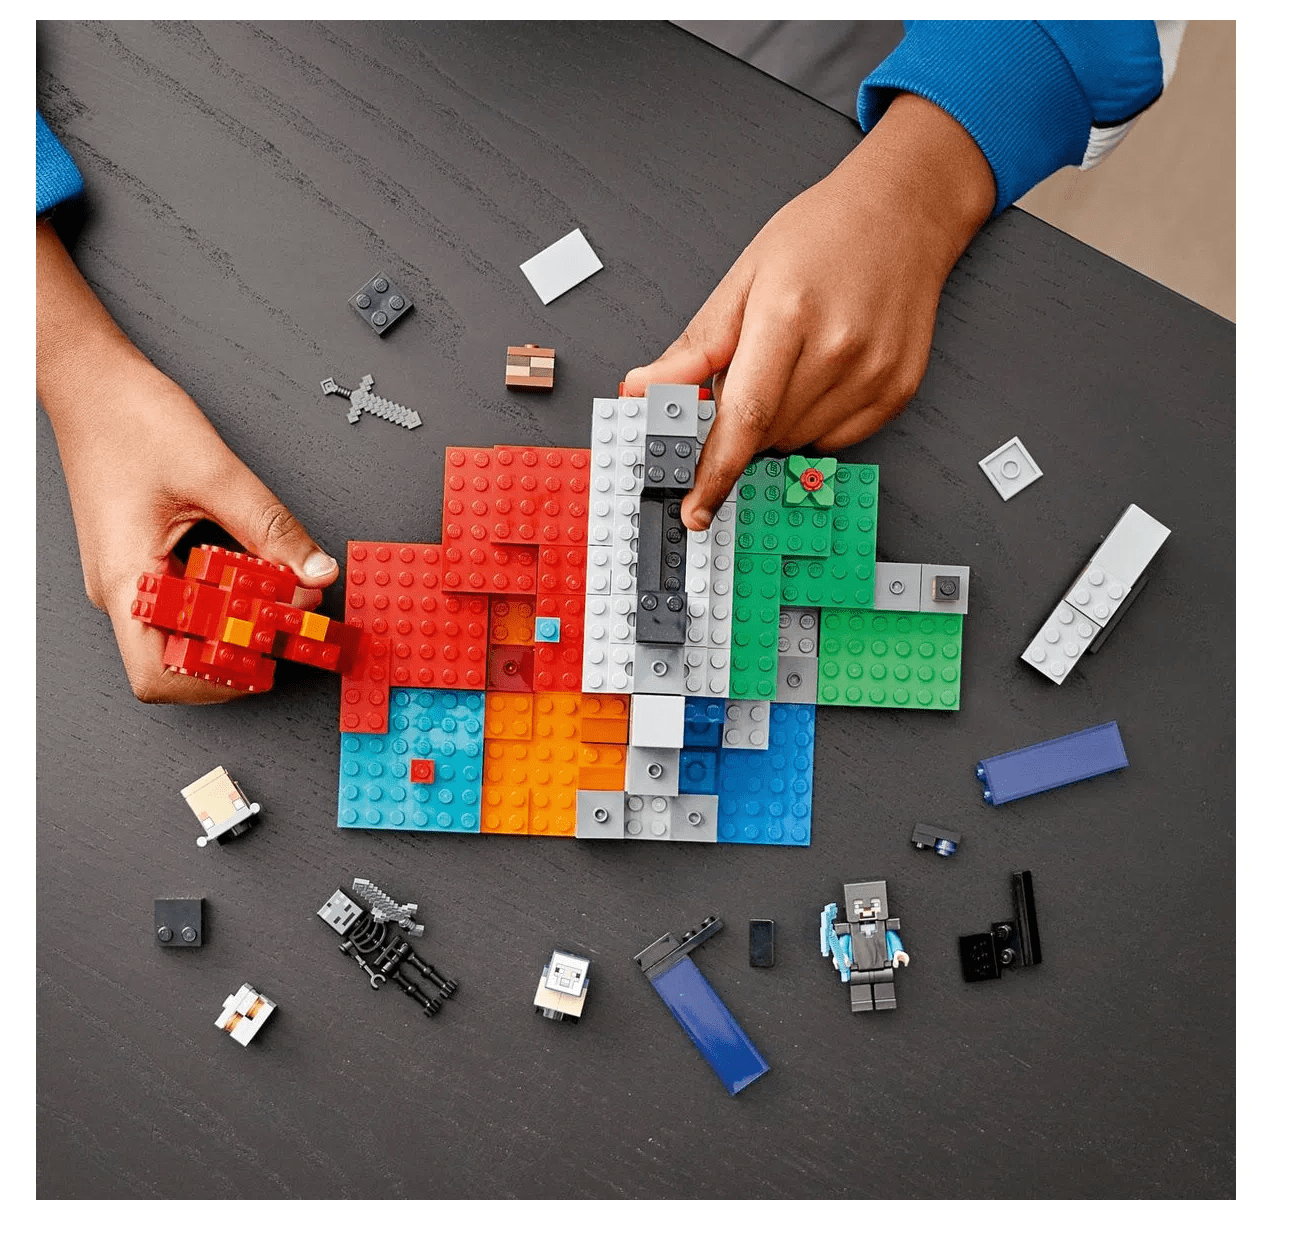 O Portal em Ruínas Lego Minecraft - Fátima Criança